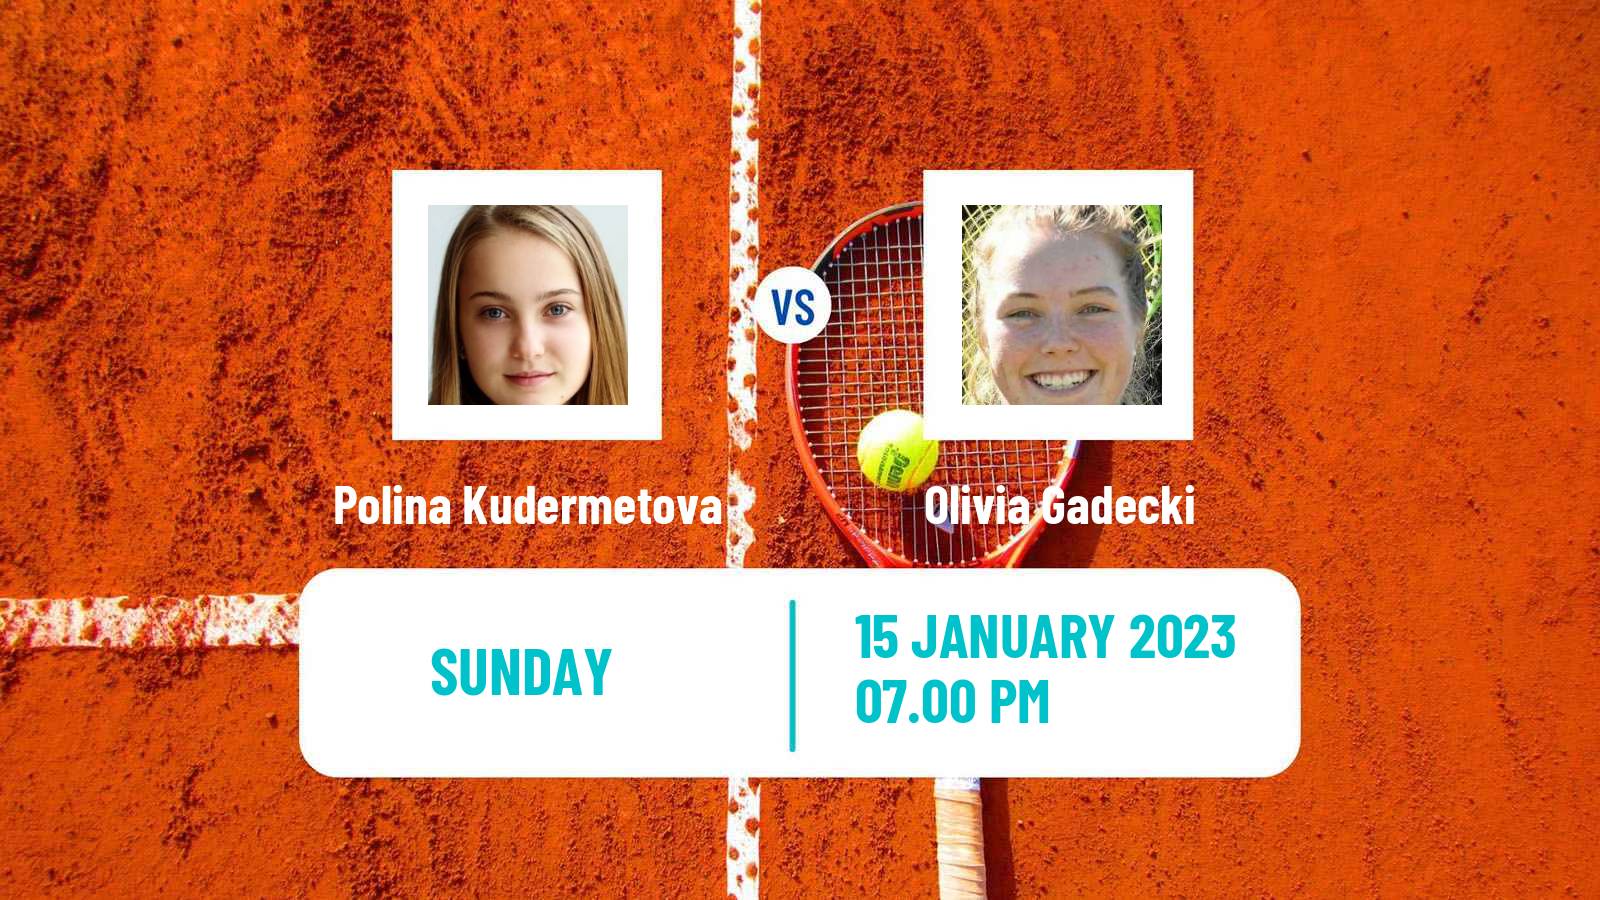 Tennis WTA Australian Open Polina Kudermetova - Olivia Gadecki